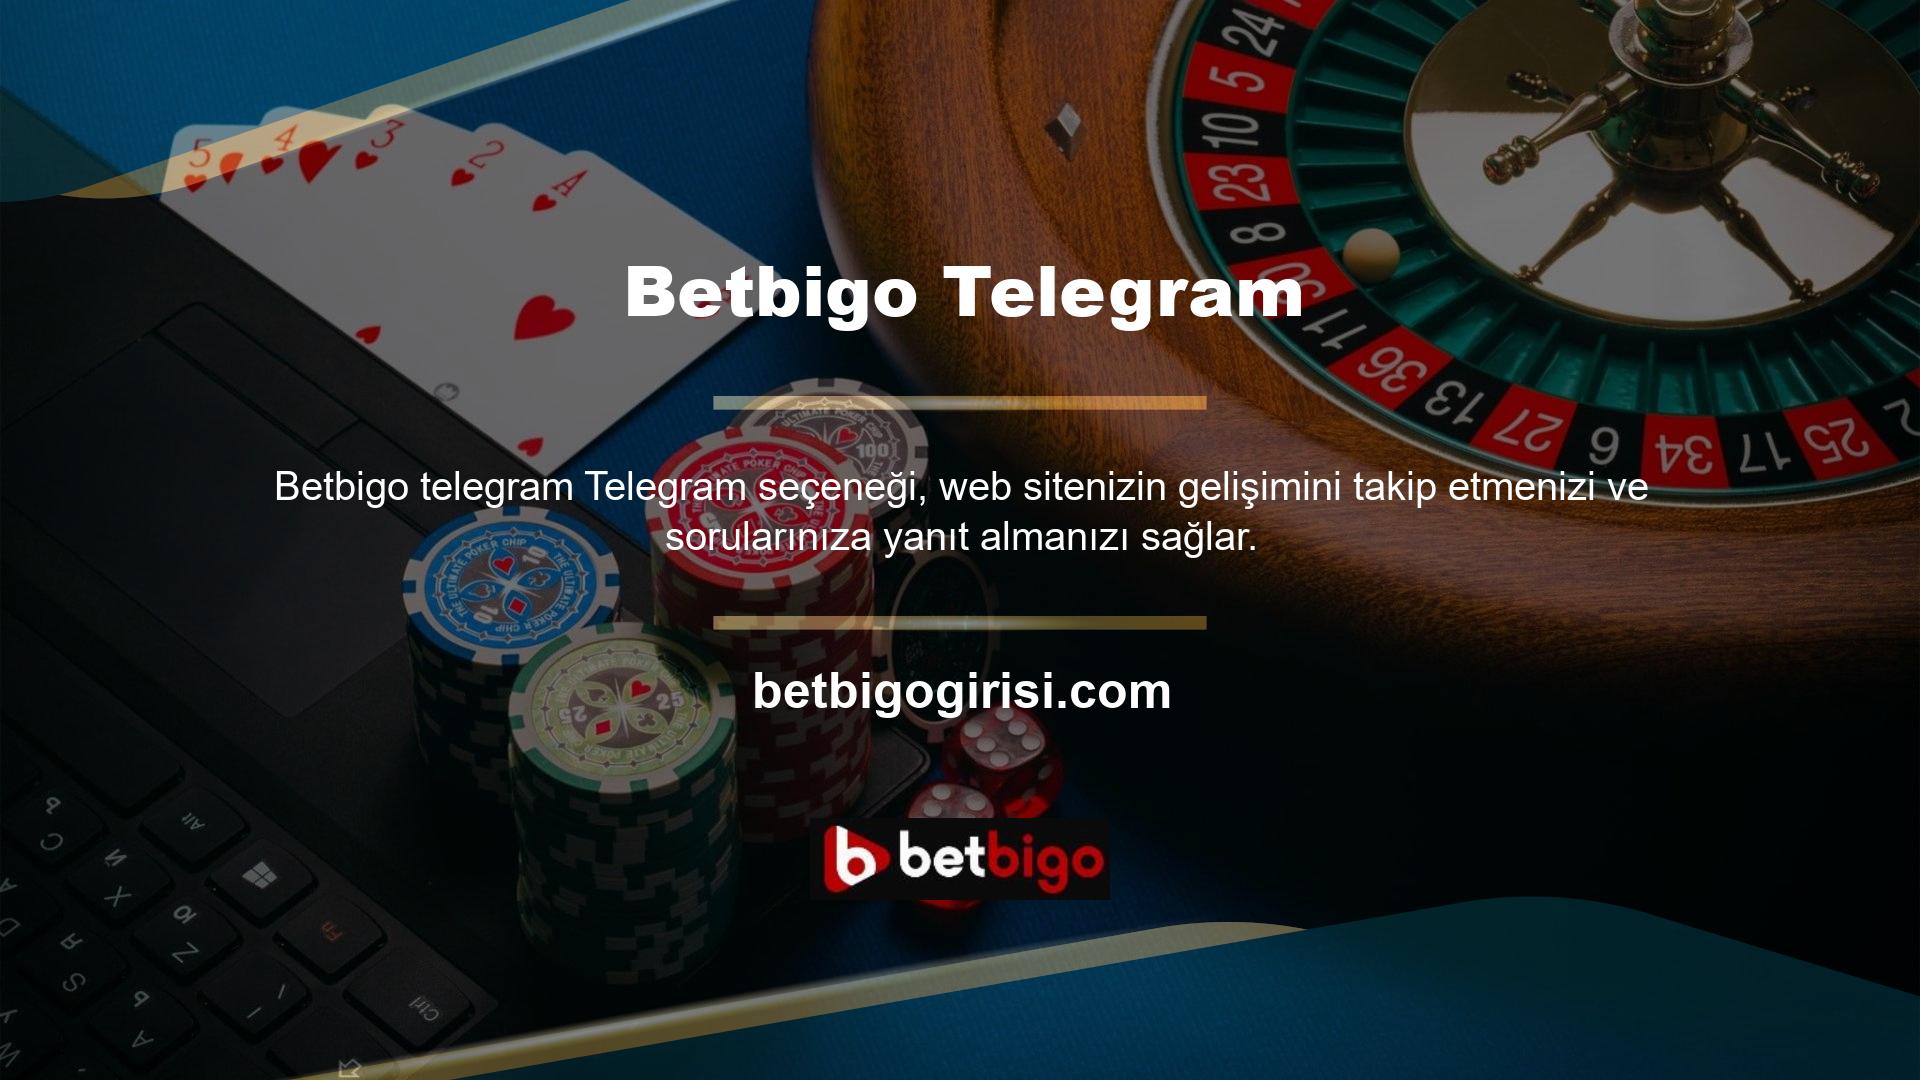 Üstelik Betbigo web sitesi, popülerliği ve güvenilir seçenekleri nedeniyle kısa sürede adından söz ettirdi